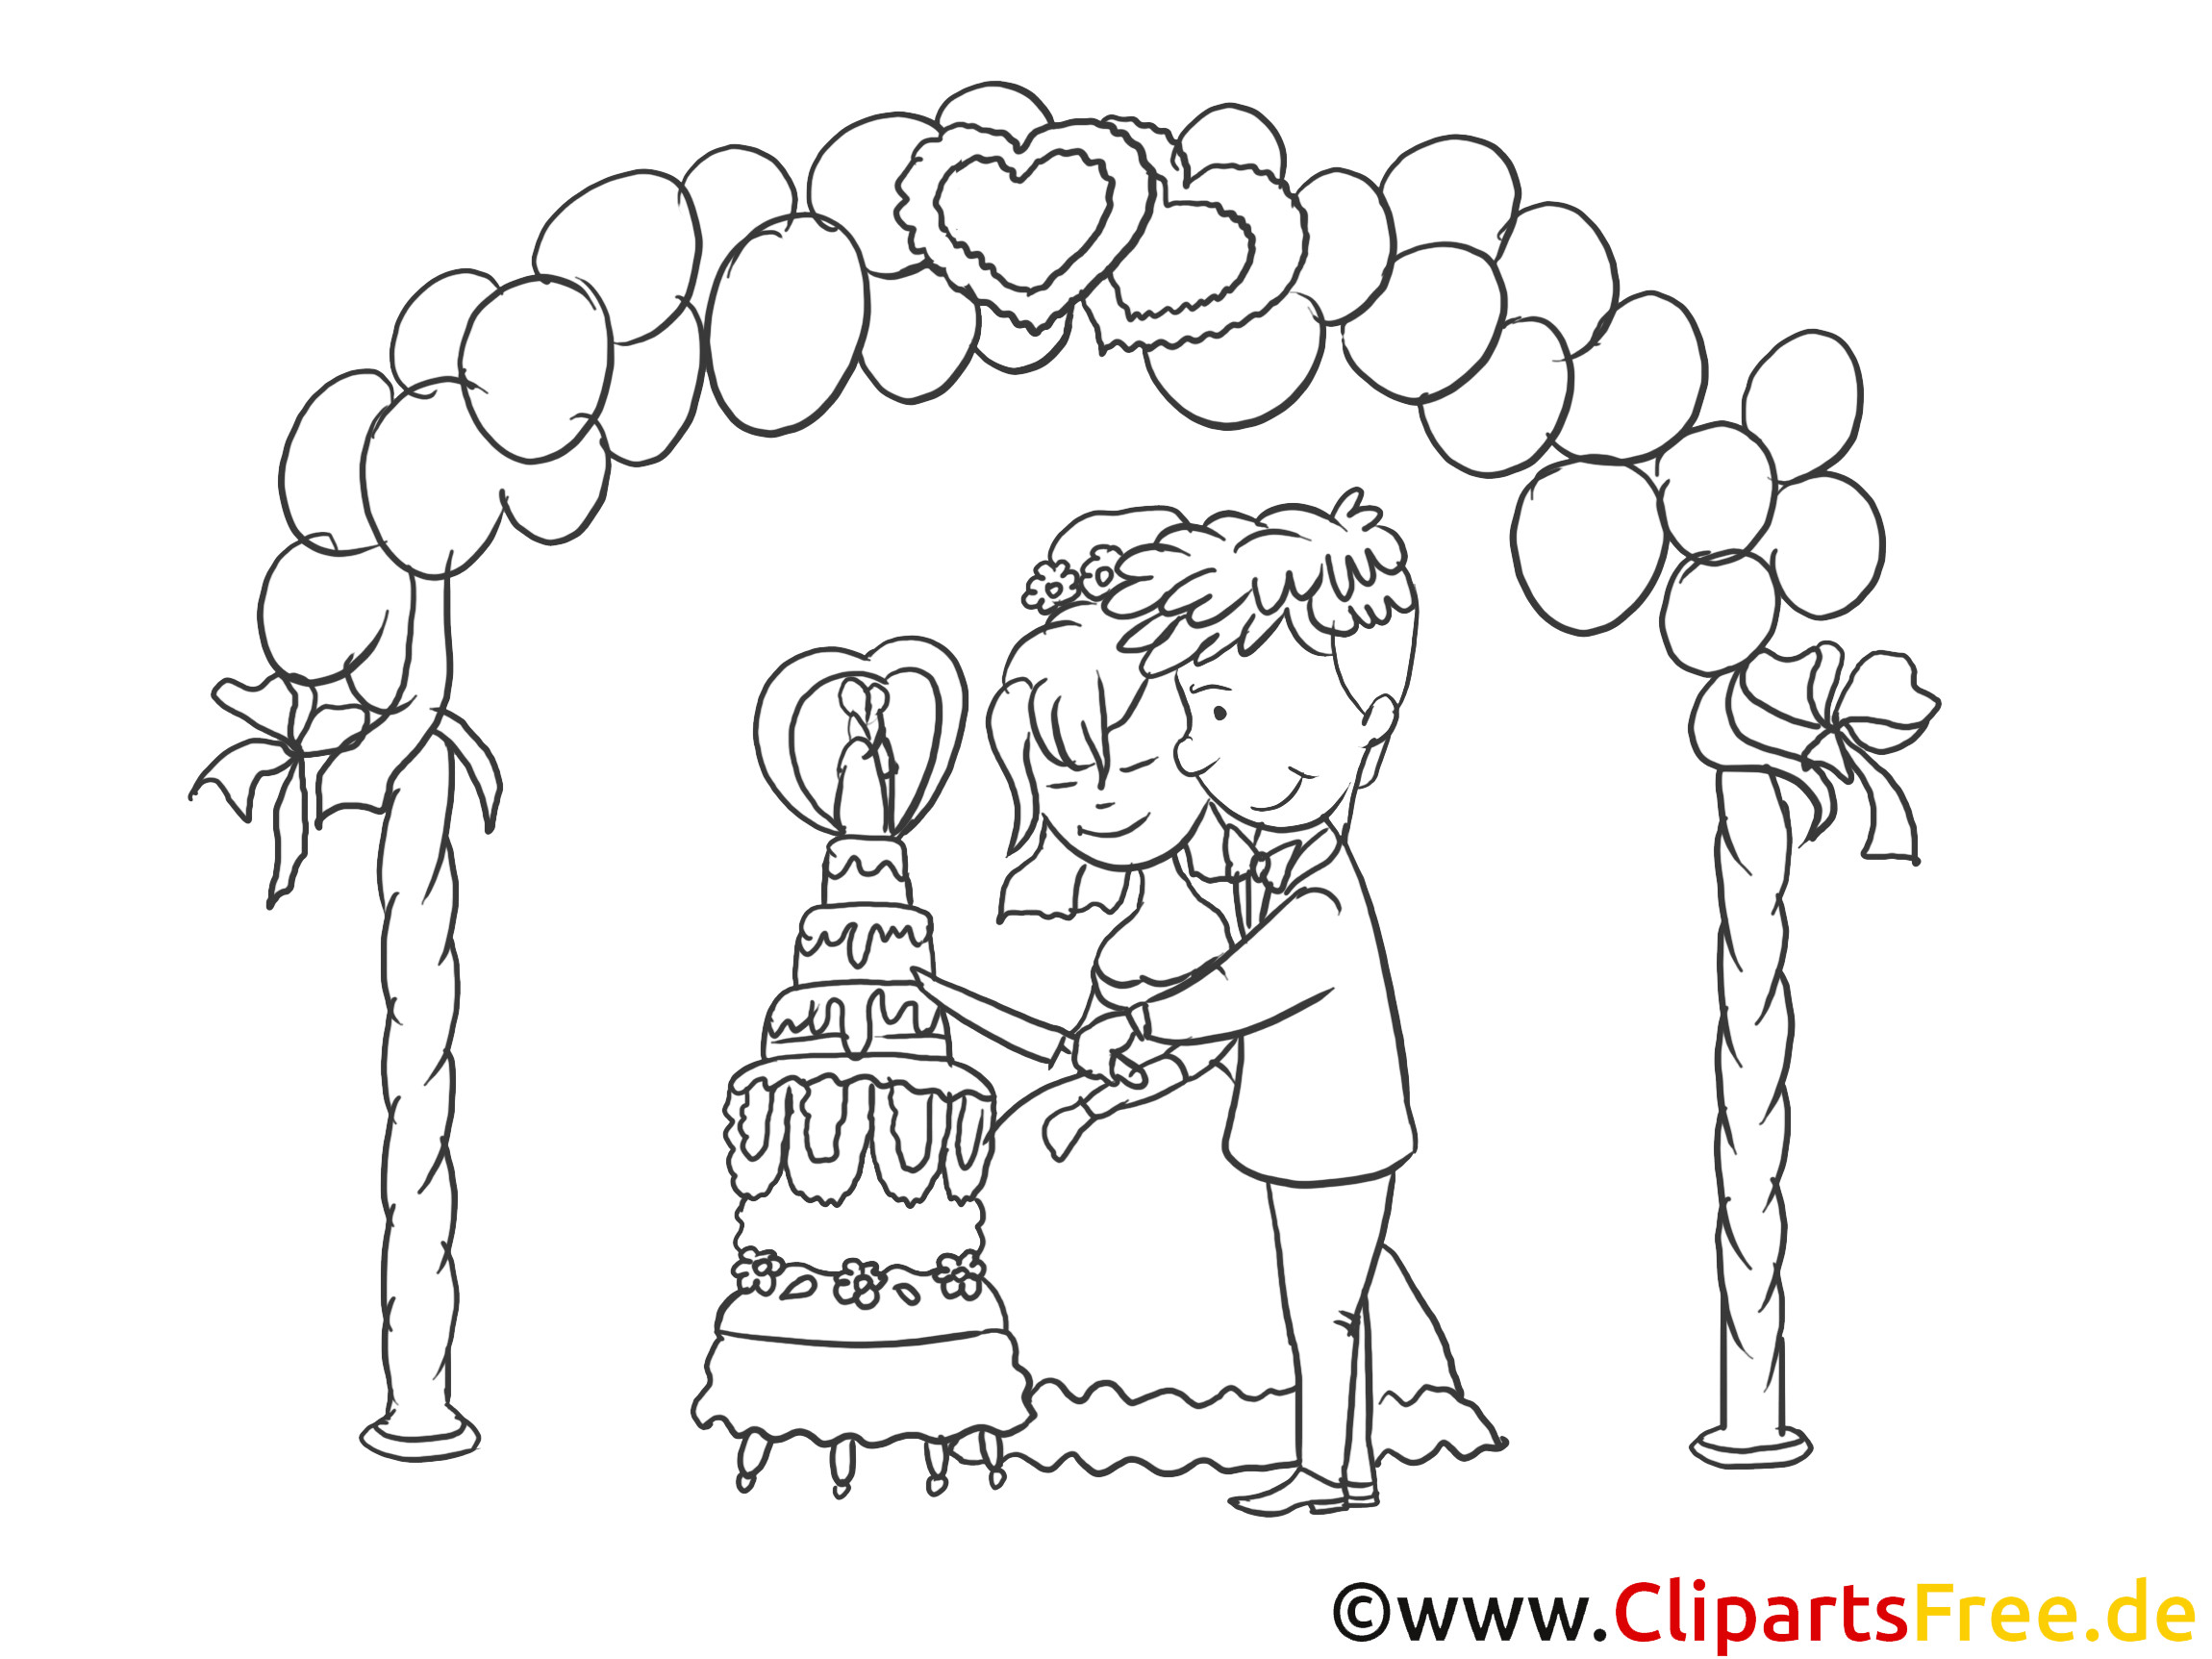 Zeichnung Hochzeit
 Kirchliche Trauung Clipart Zeichnung Bild schwarz weiss